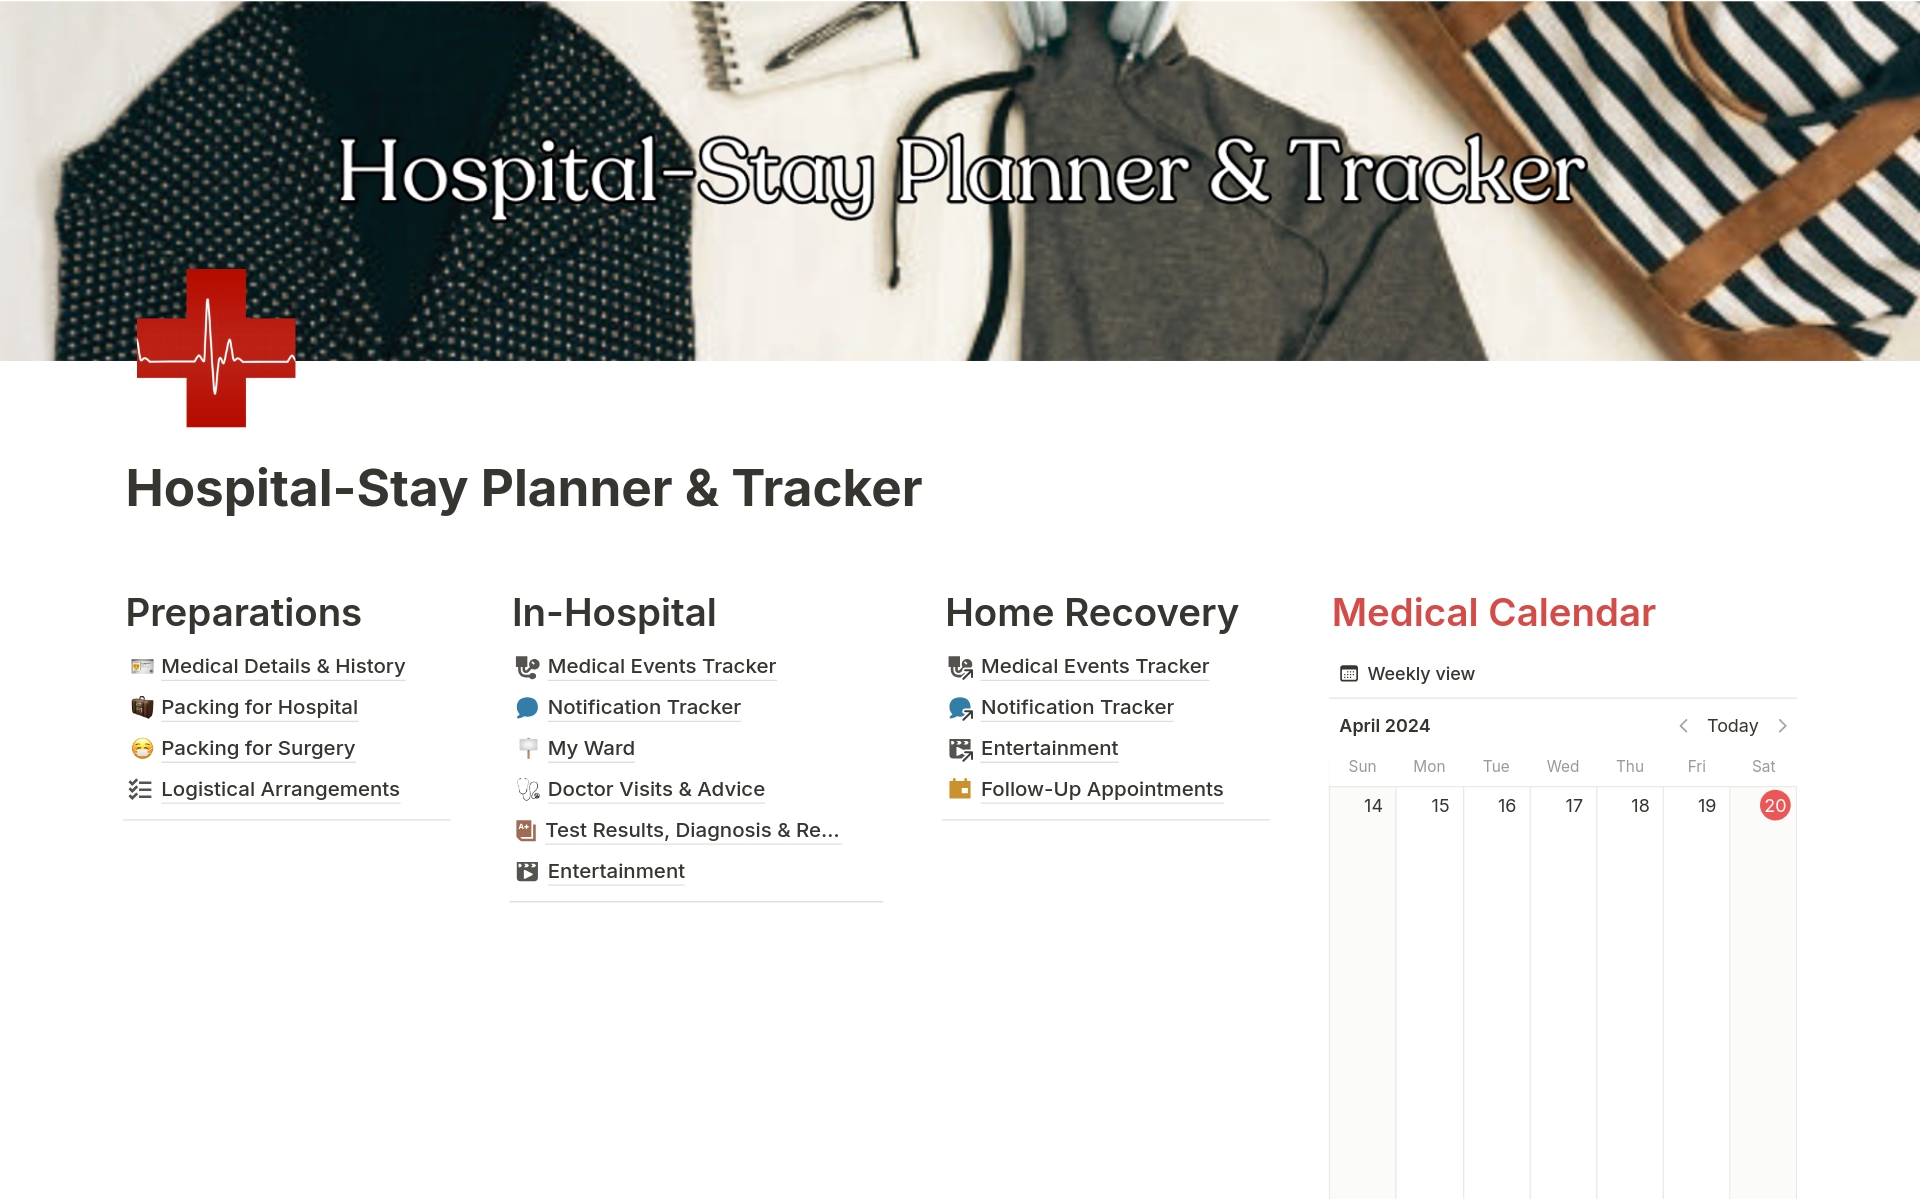 Uma prévia do modelo para Hospital-Stay Planner & Tracker